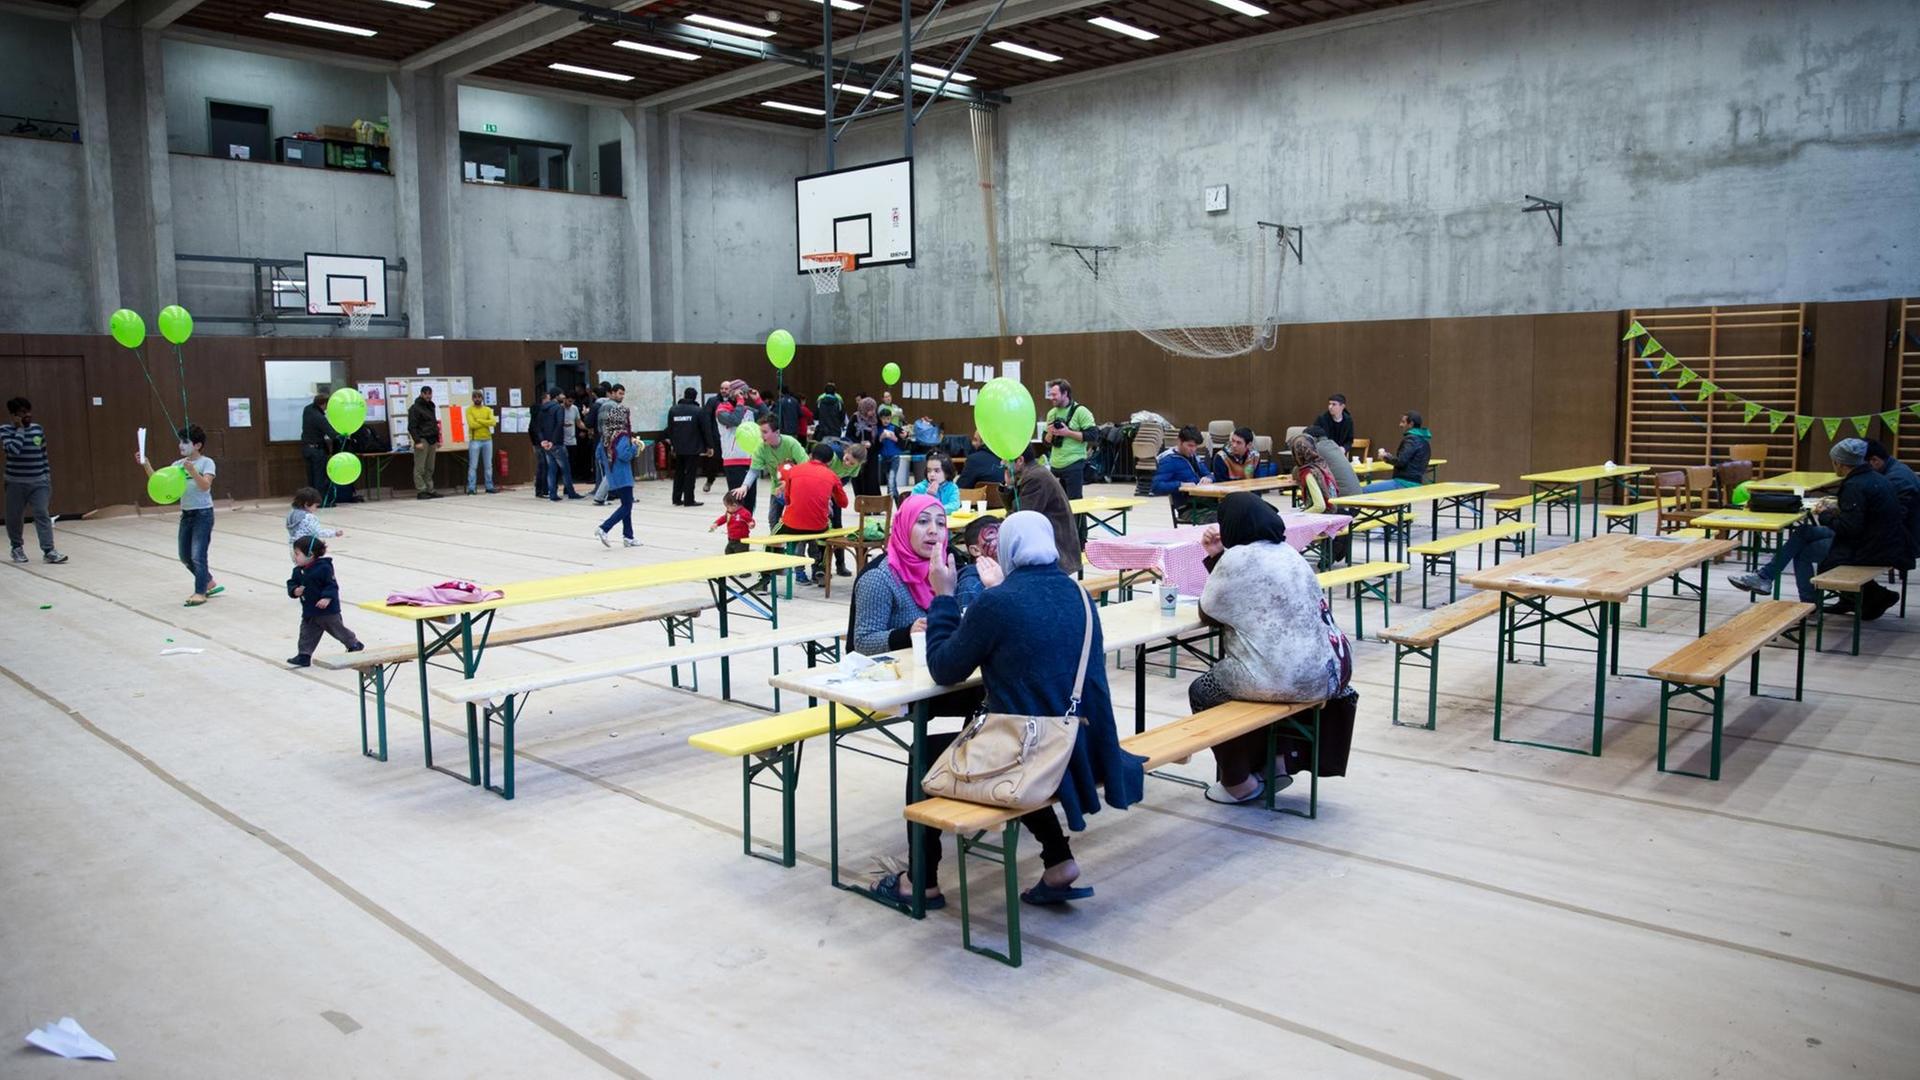 Blick in eine Flüchtlingsunterkunft im Rahmen des Mitzvah Day am 15.11.2015 in der Wichertstraße in Berlin